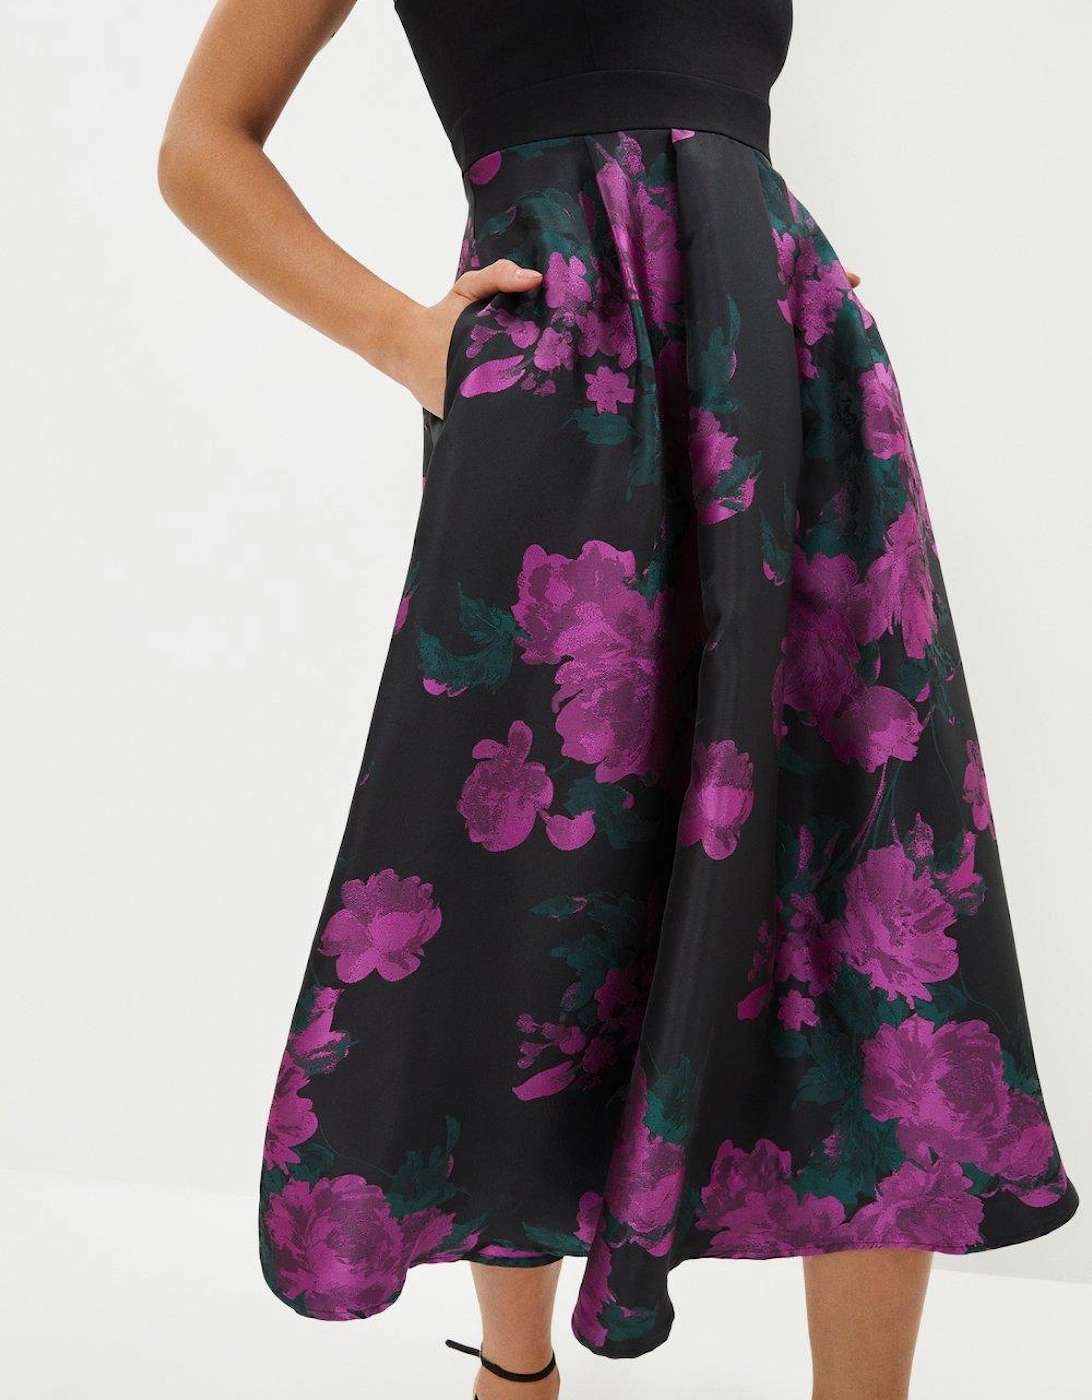 Jacquard Dress With Sleeveless Ponte Top